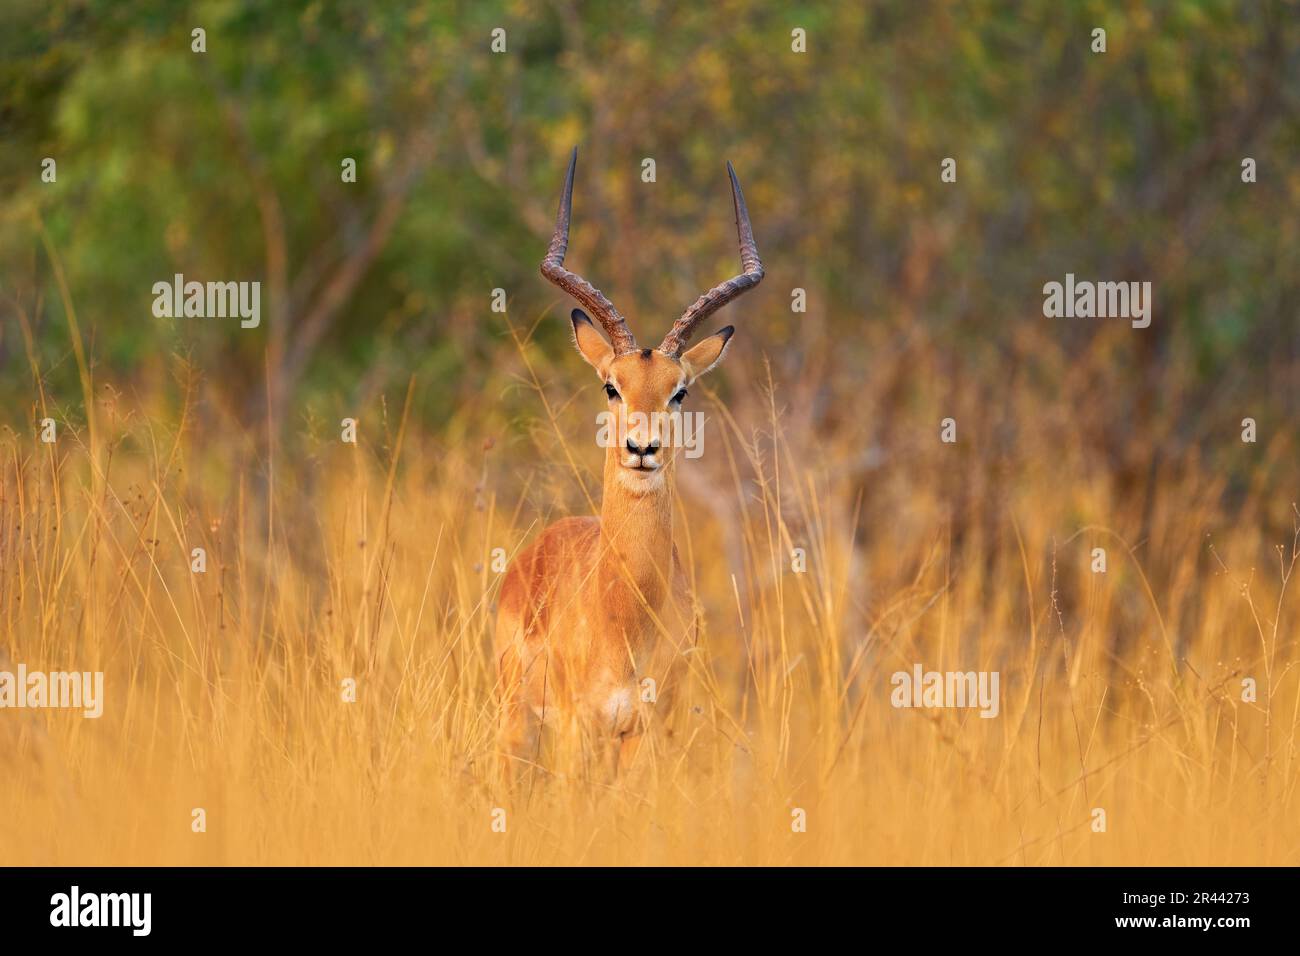 Antilope in der Grassavannah, Okavango Südafrika. Impala im goldenen Gras. Schönes Impala im Gras mit Abendsonne. Tier in der Natur ha Stockfoto